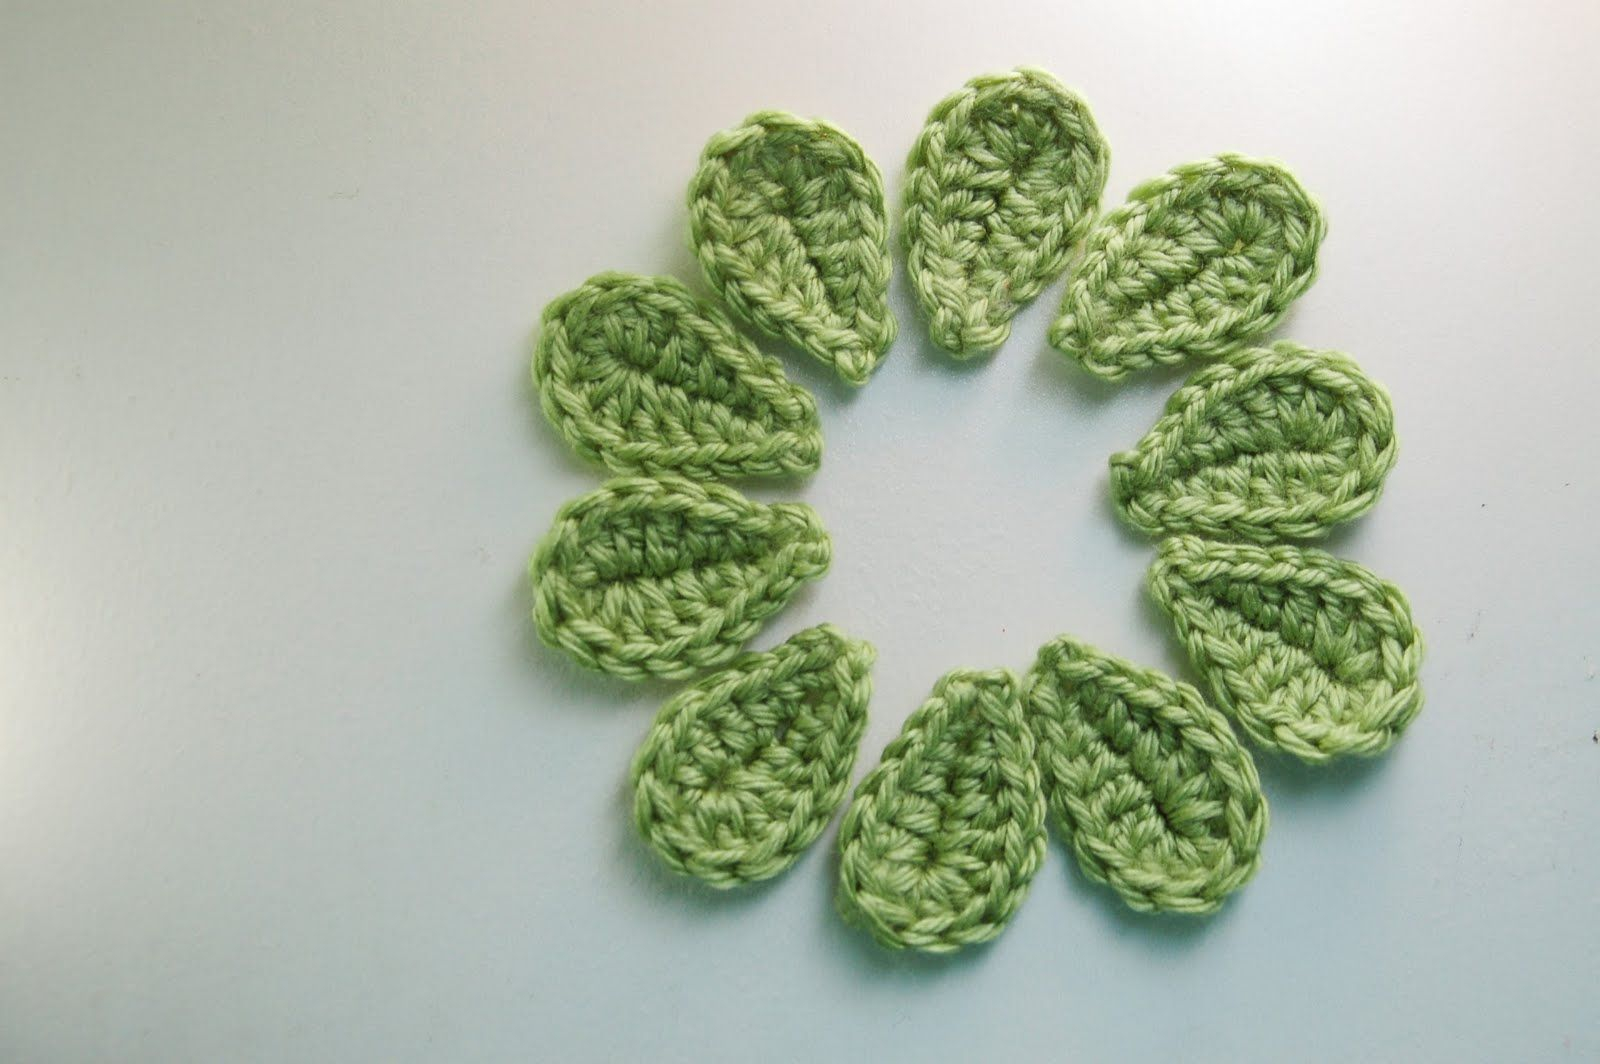 Crochet Leaf Pattern Video 2 Minute Crochet Leaf Free Pattern Crochet Love Crochet Leaf